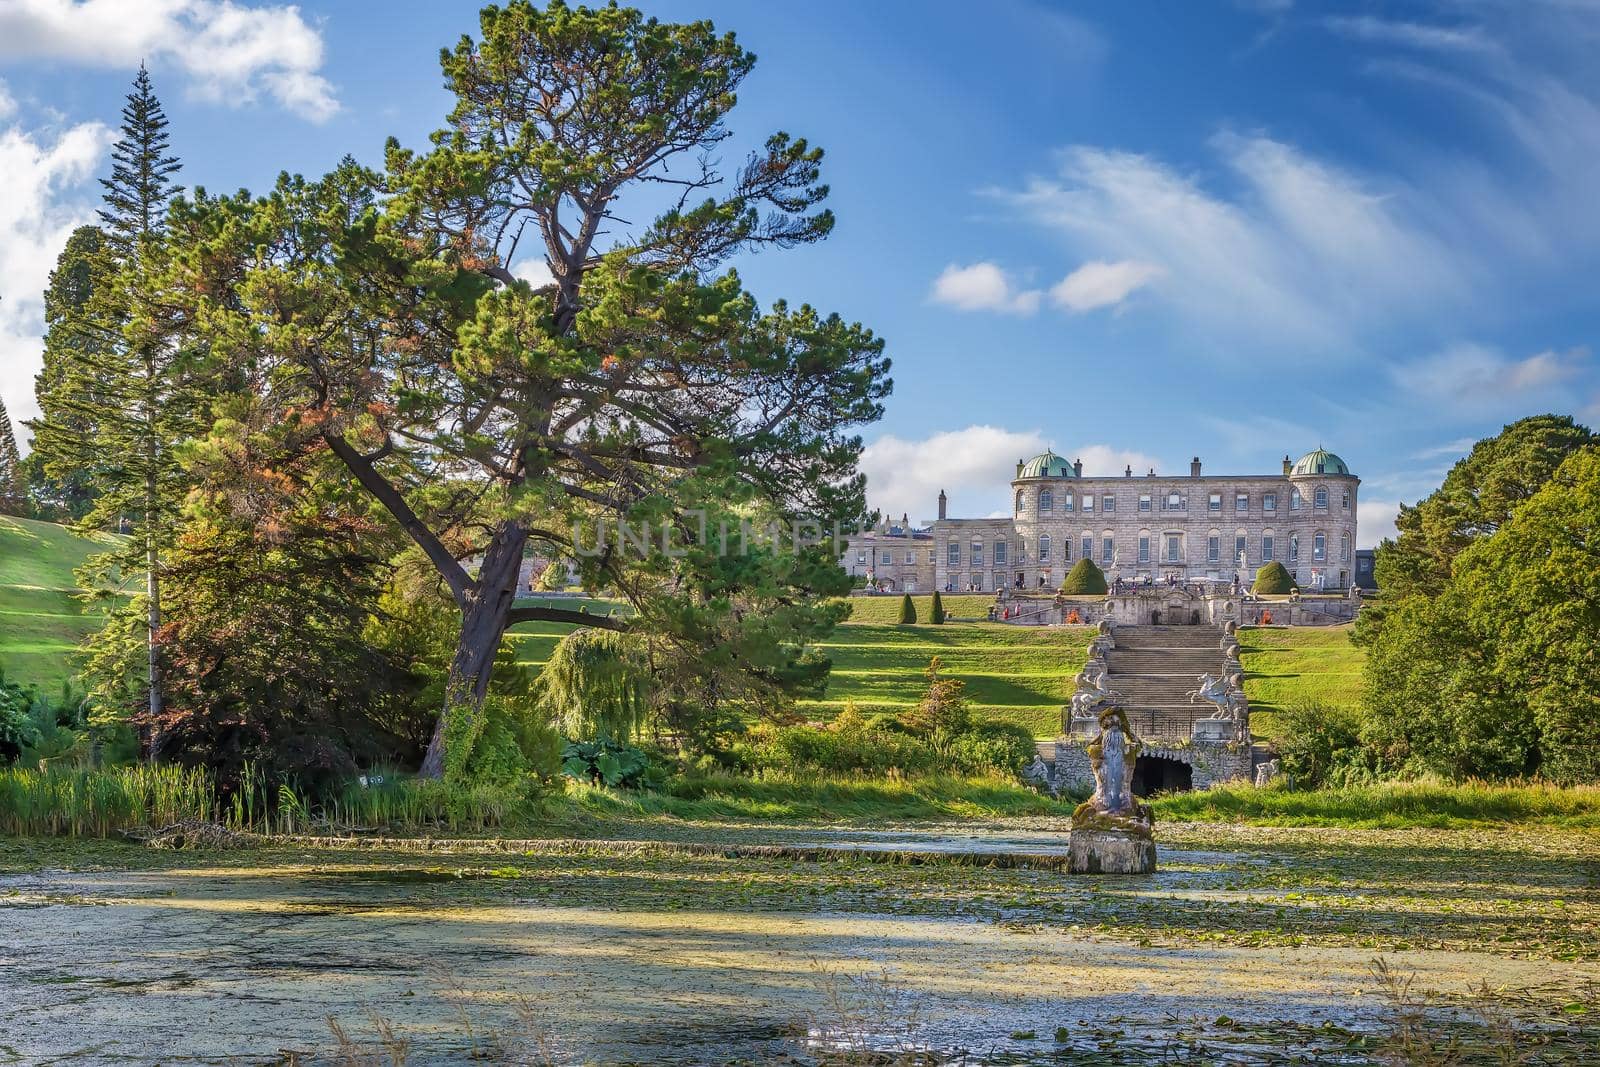 Powerscourt Estate, Ireland by borisb17